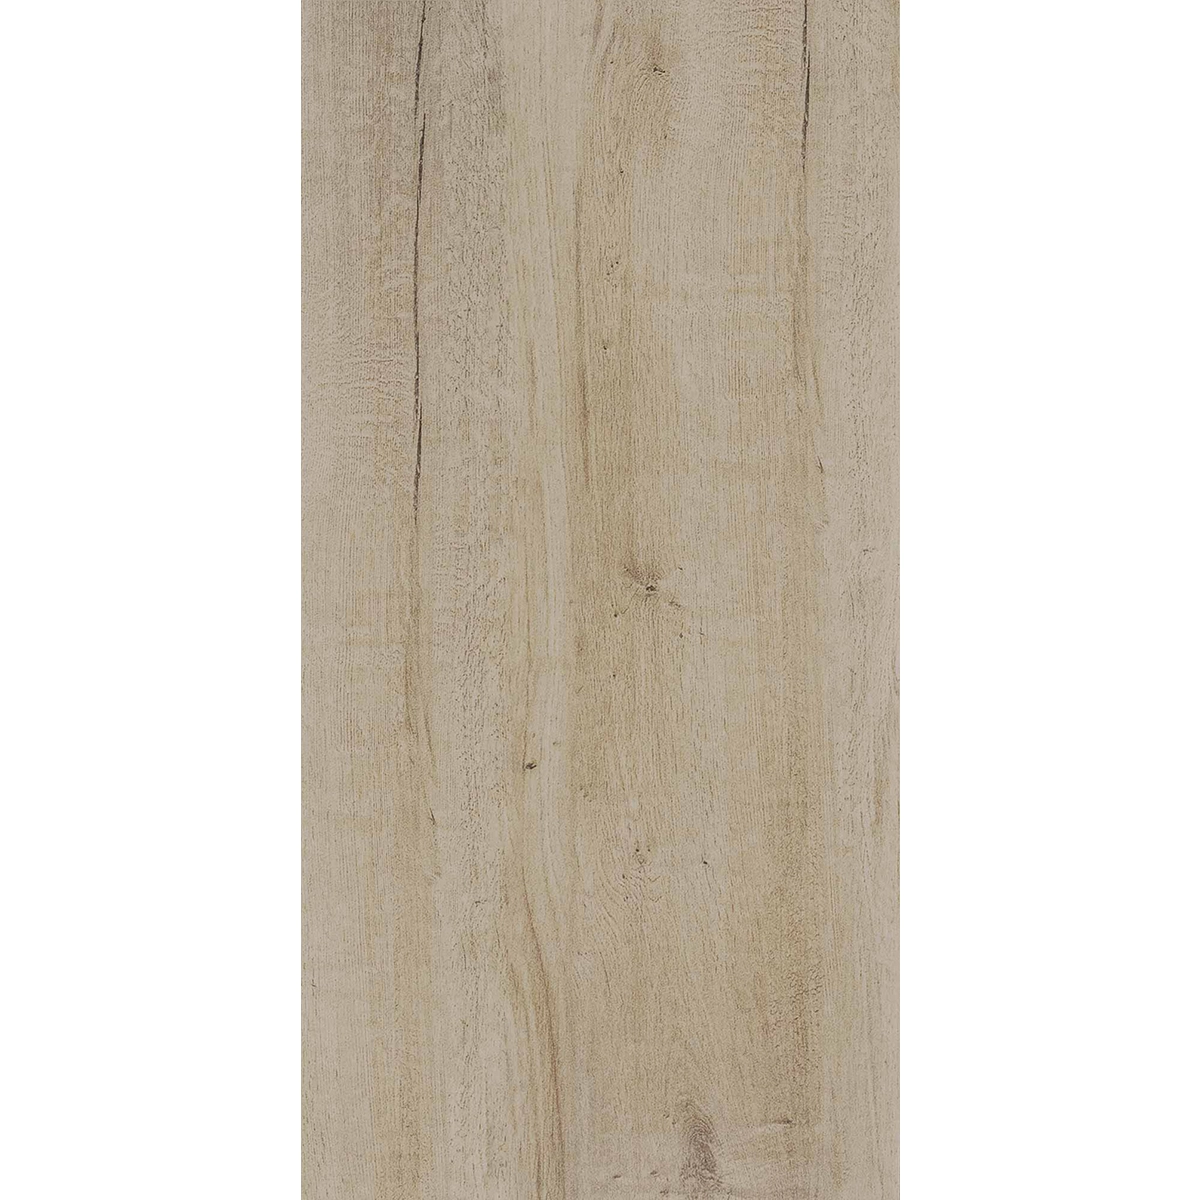 Terrassenplatten Sumatra Wood Brown 45x90x2 cm 